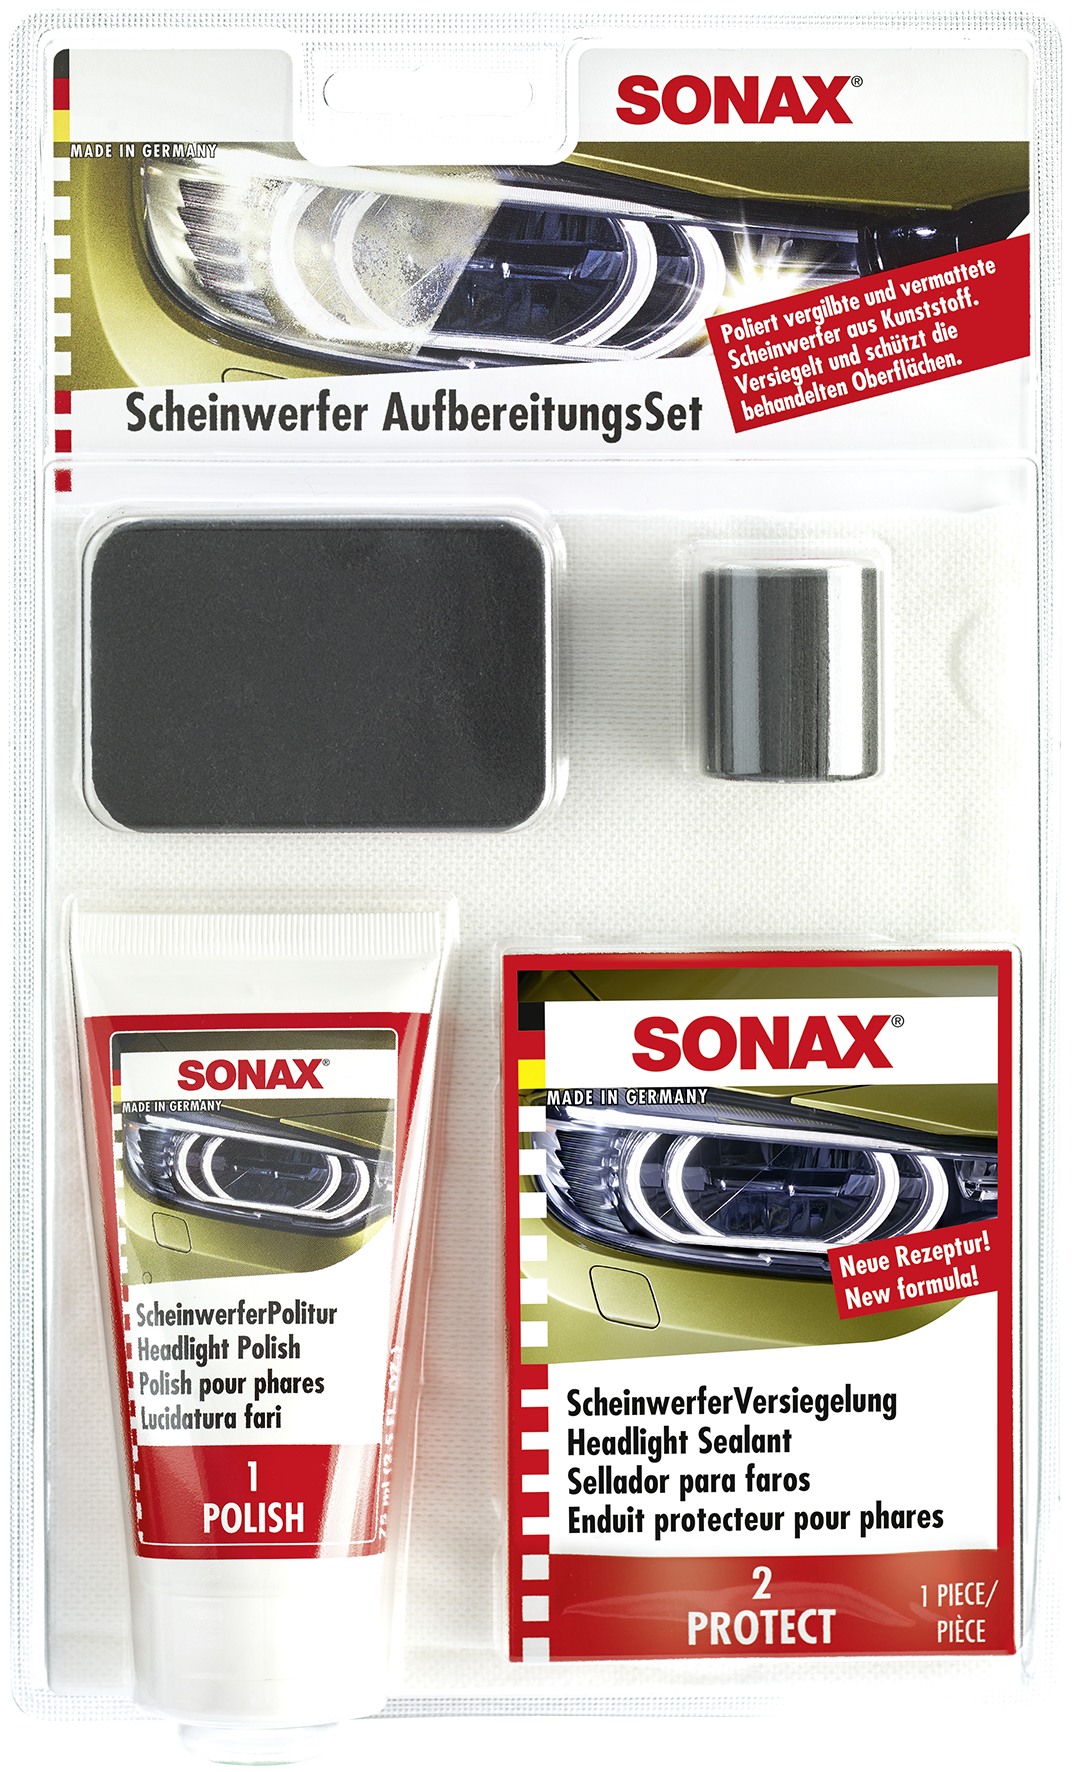 Sonax Scheinwerferaufbereitungsset Fahrzeugshine